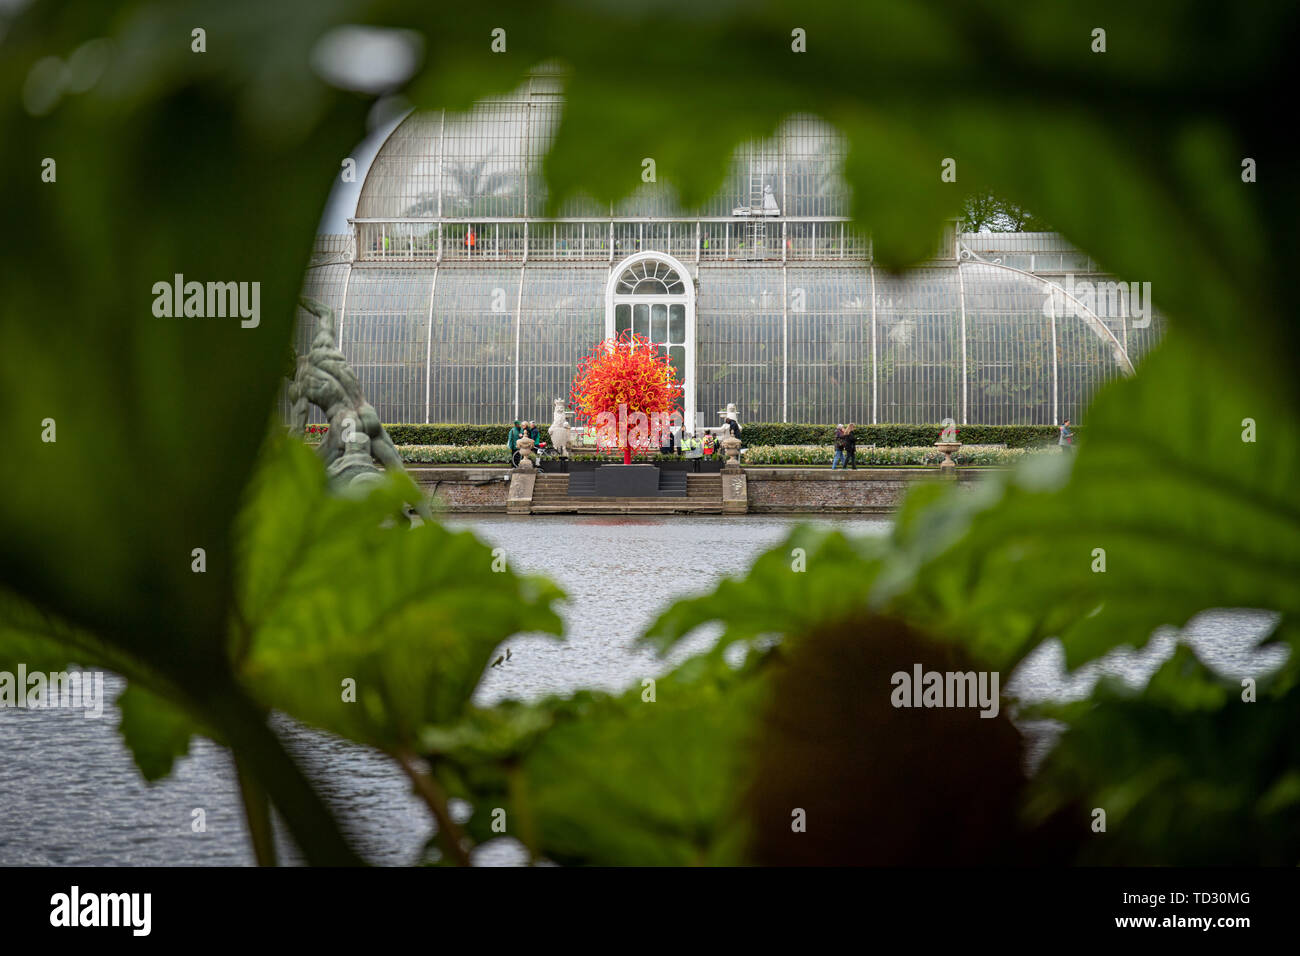 La vista de la Casa de las palmeras y el sol del verano escultura en vidrio por Dale Chihuly vistos a través de las hojas de ruibarbo gigante junto al agua. Foto de stock